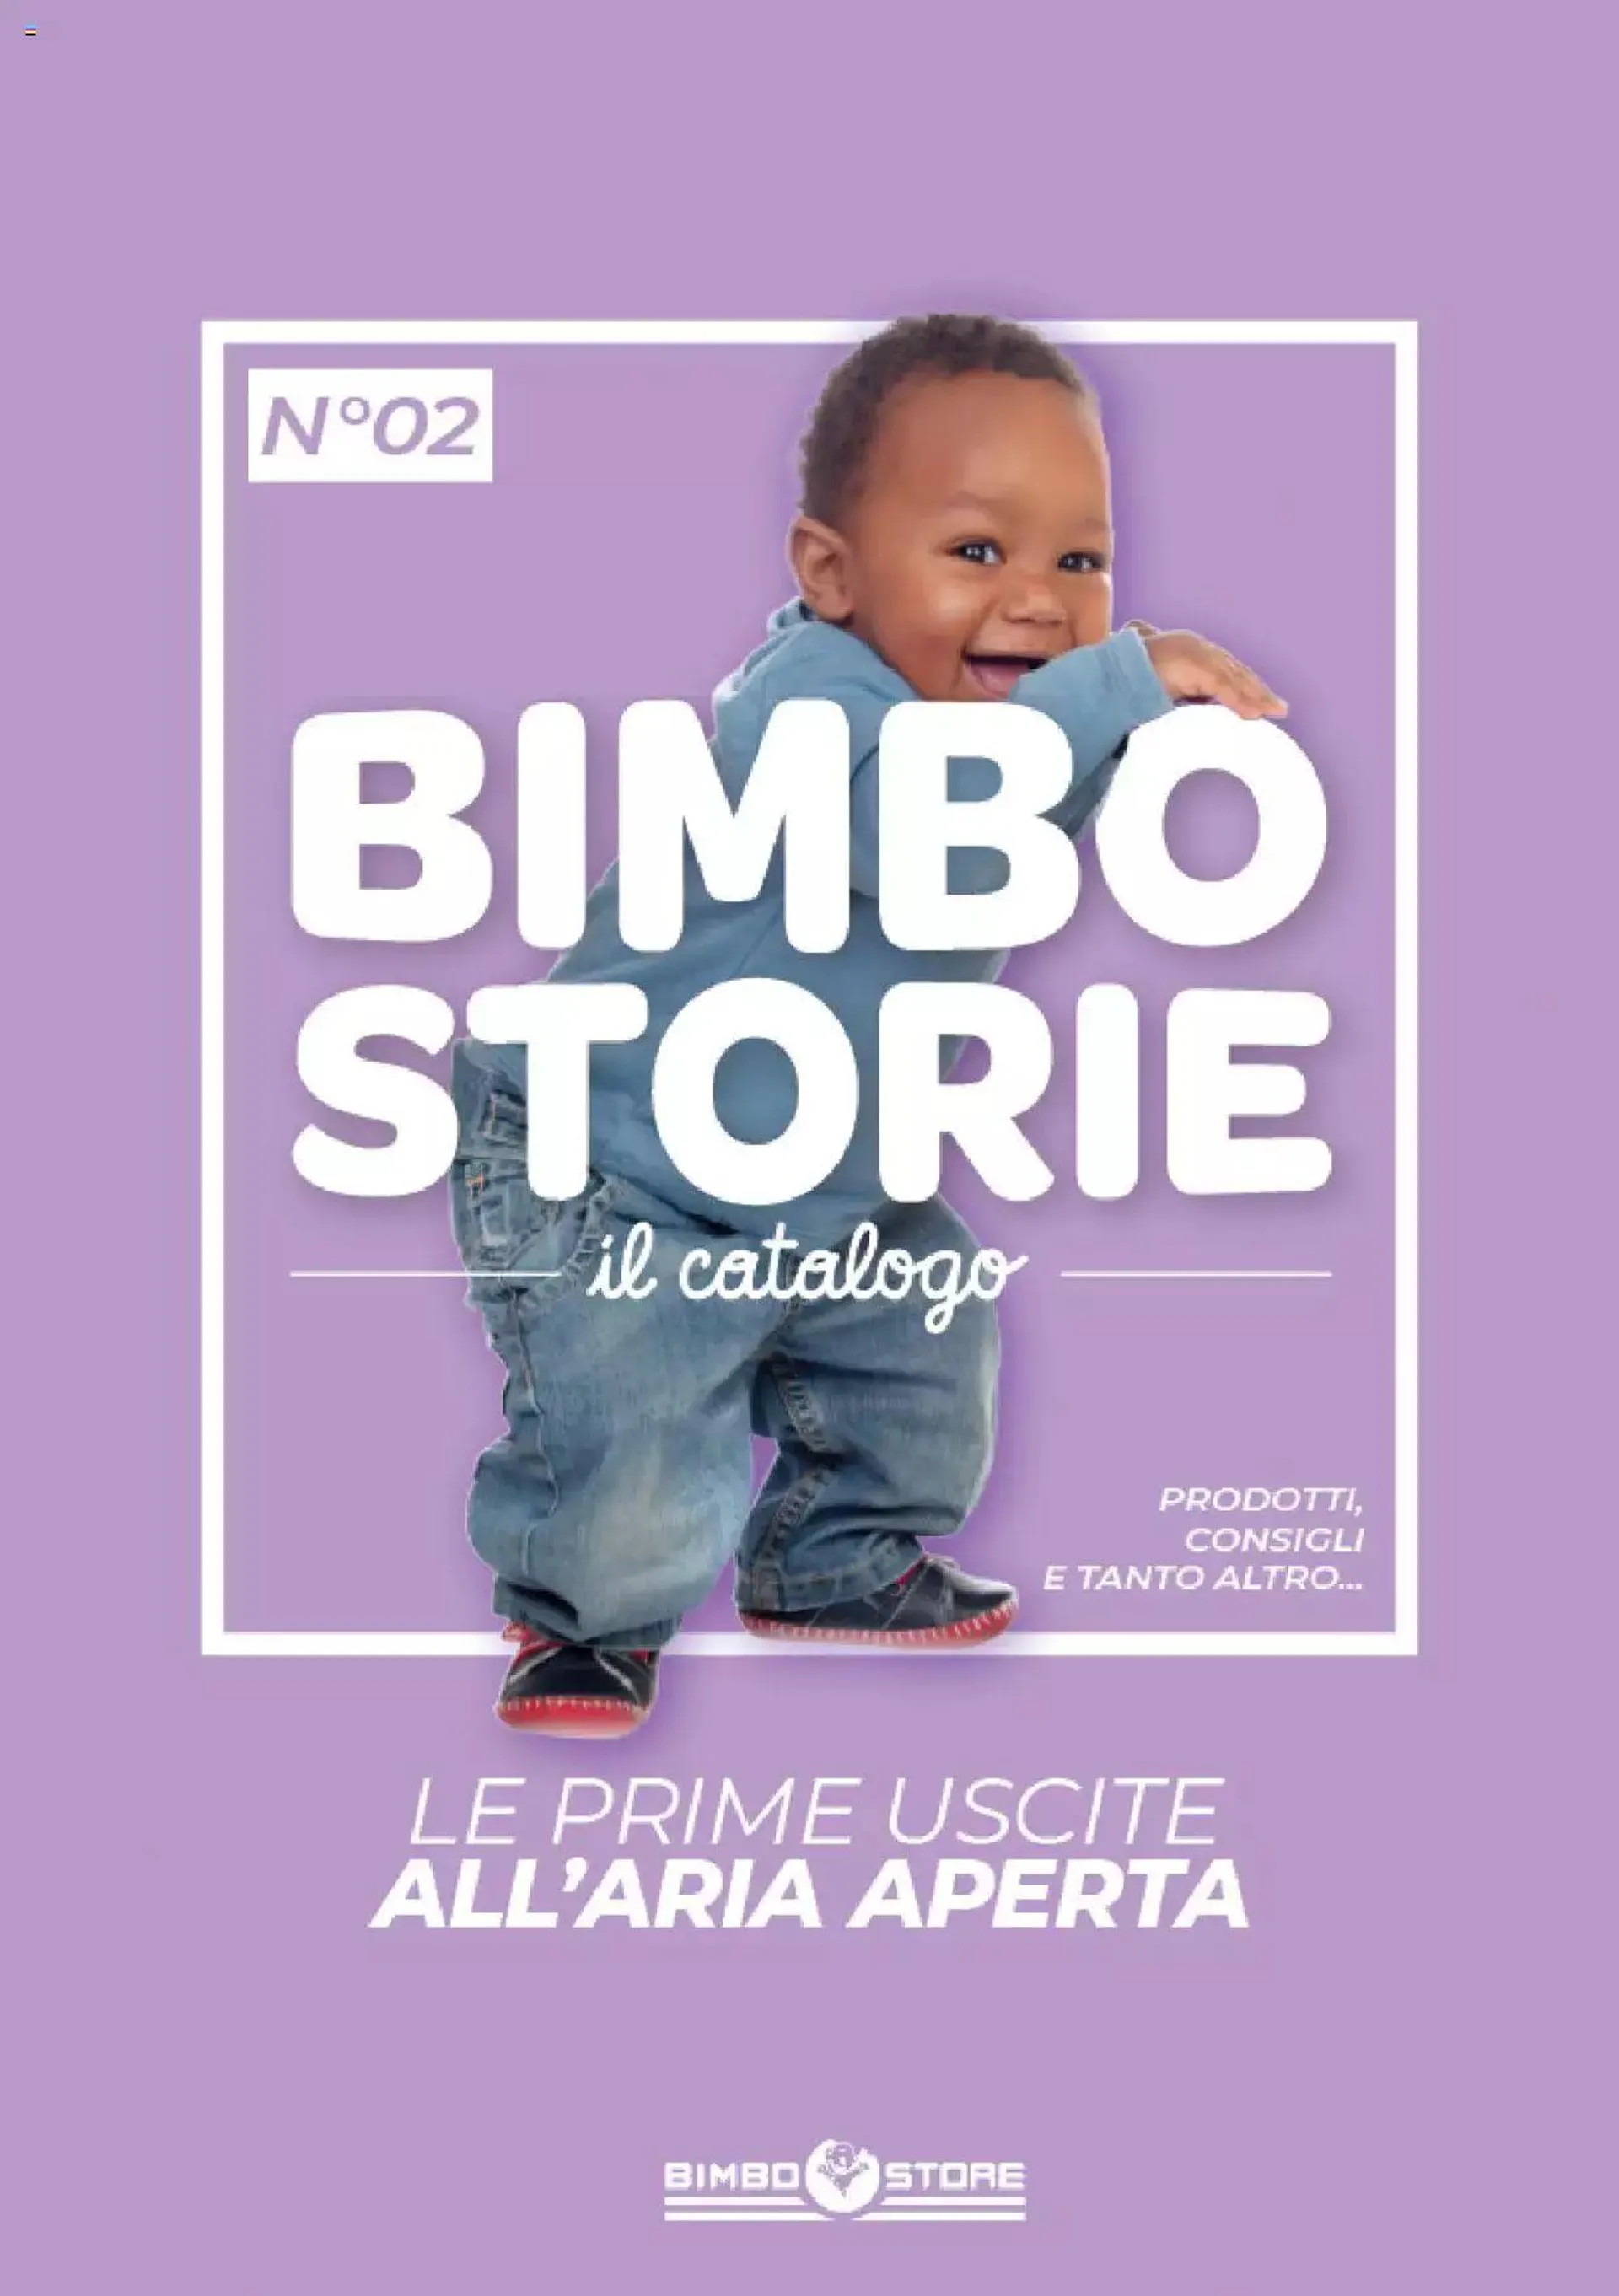 Bimbo store - Catalogo Bimbostorie da 1 giugno a 31 dicembre di 2022 - Pagina del volantino 1